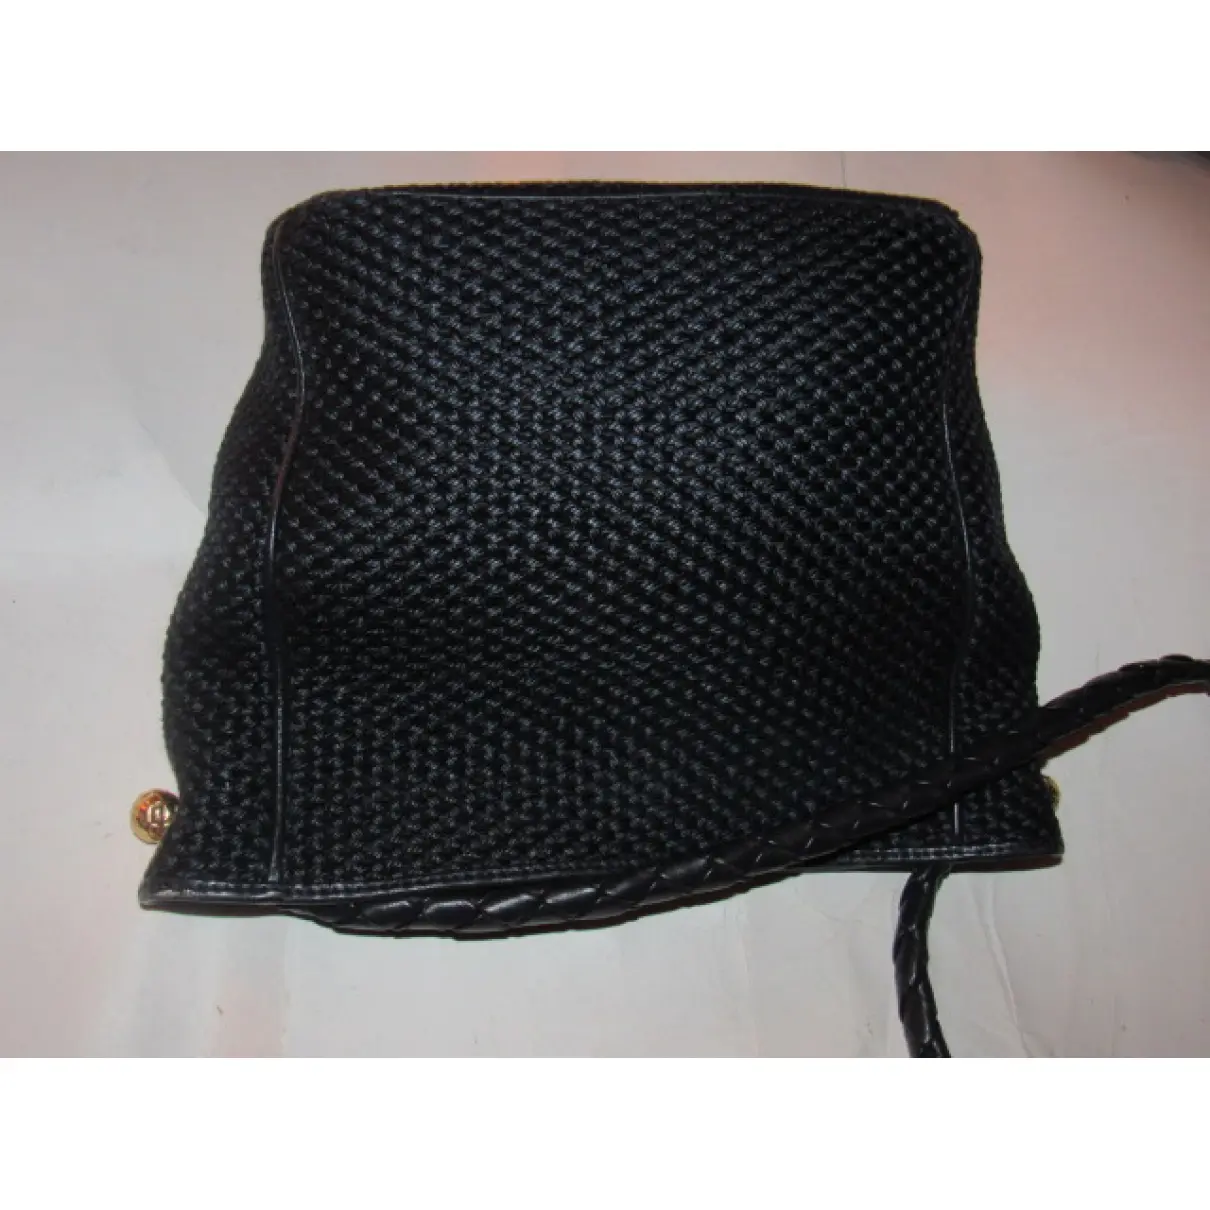 Sloane leather handbag Bottega Veneta